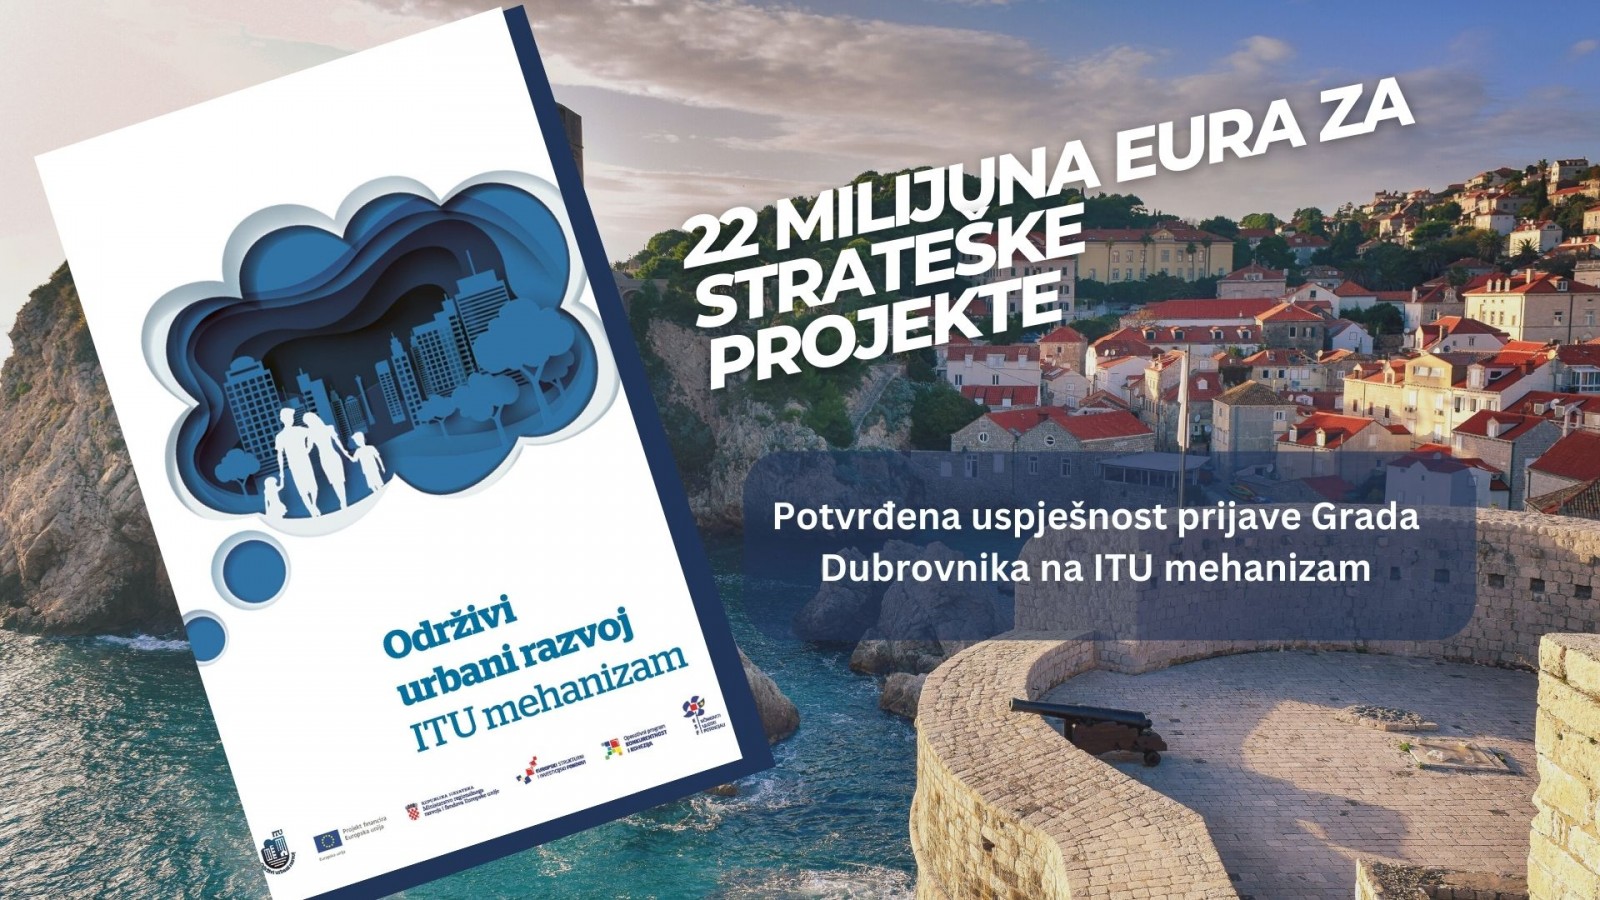 22 MILIJUNA EURA ZA STRATEŠKE PROJEKTE – Potvrđena uspješnost prijave Grada Dubrovnika na ITU mehanizam